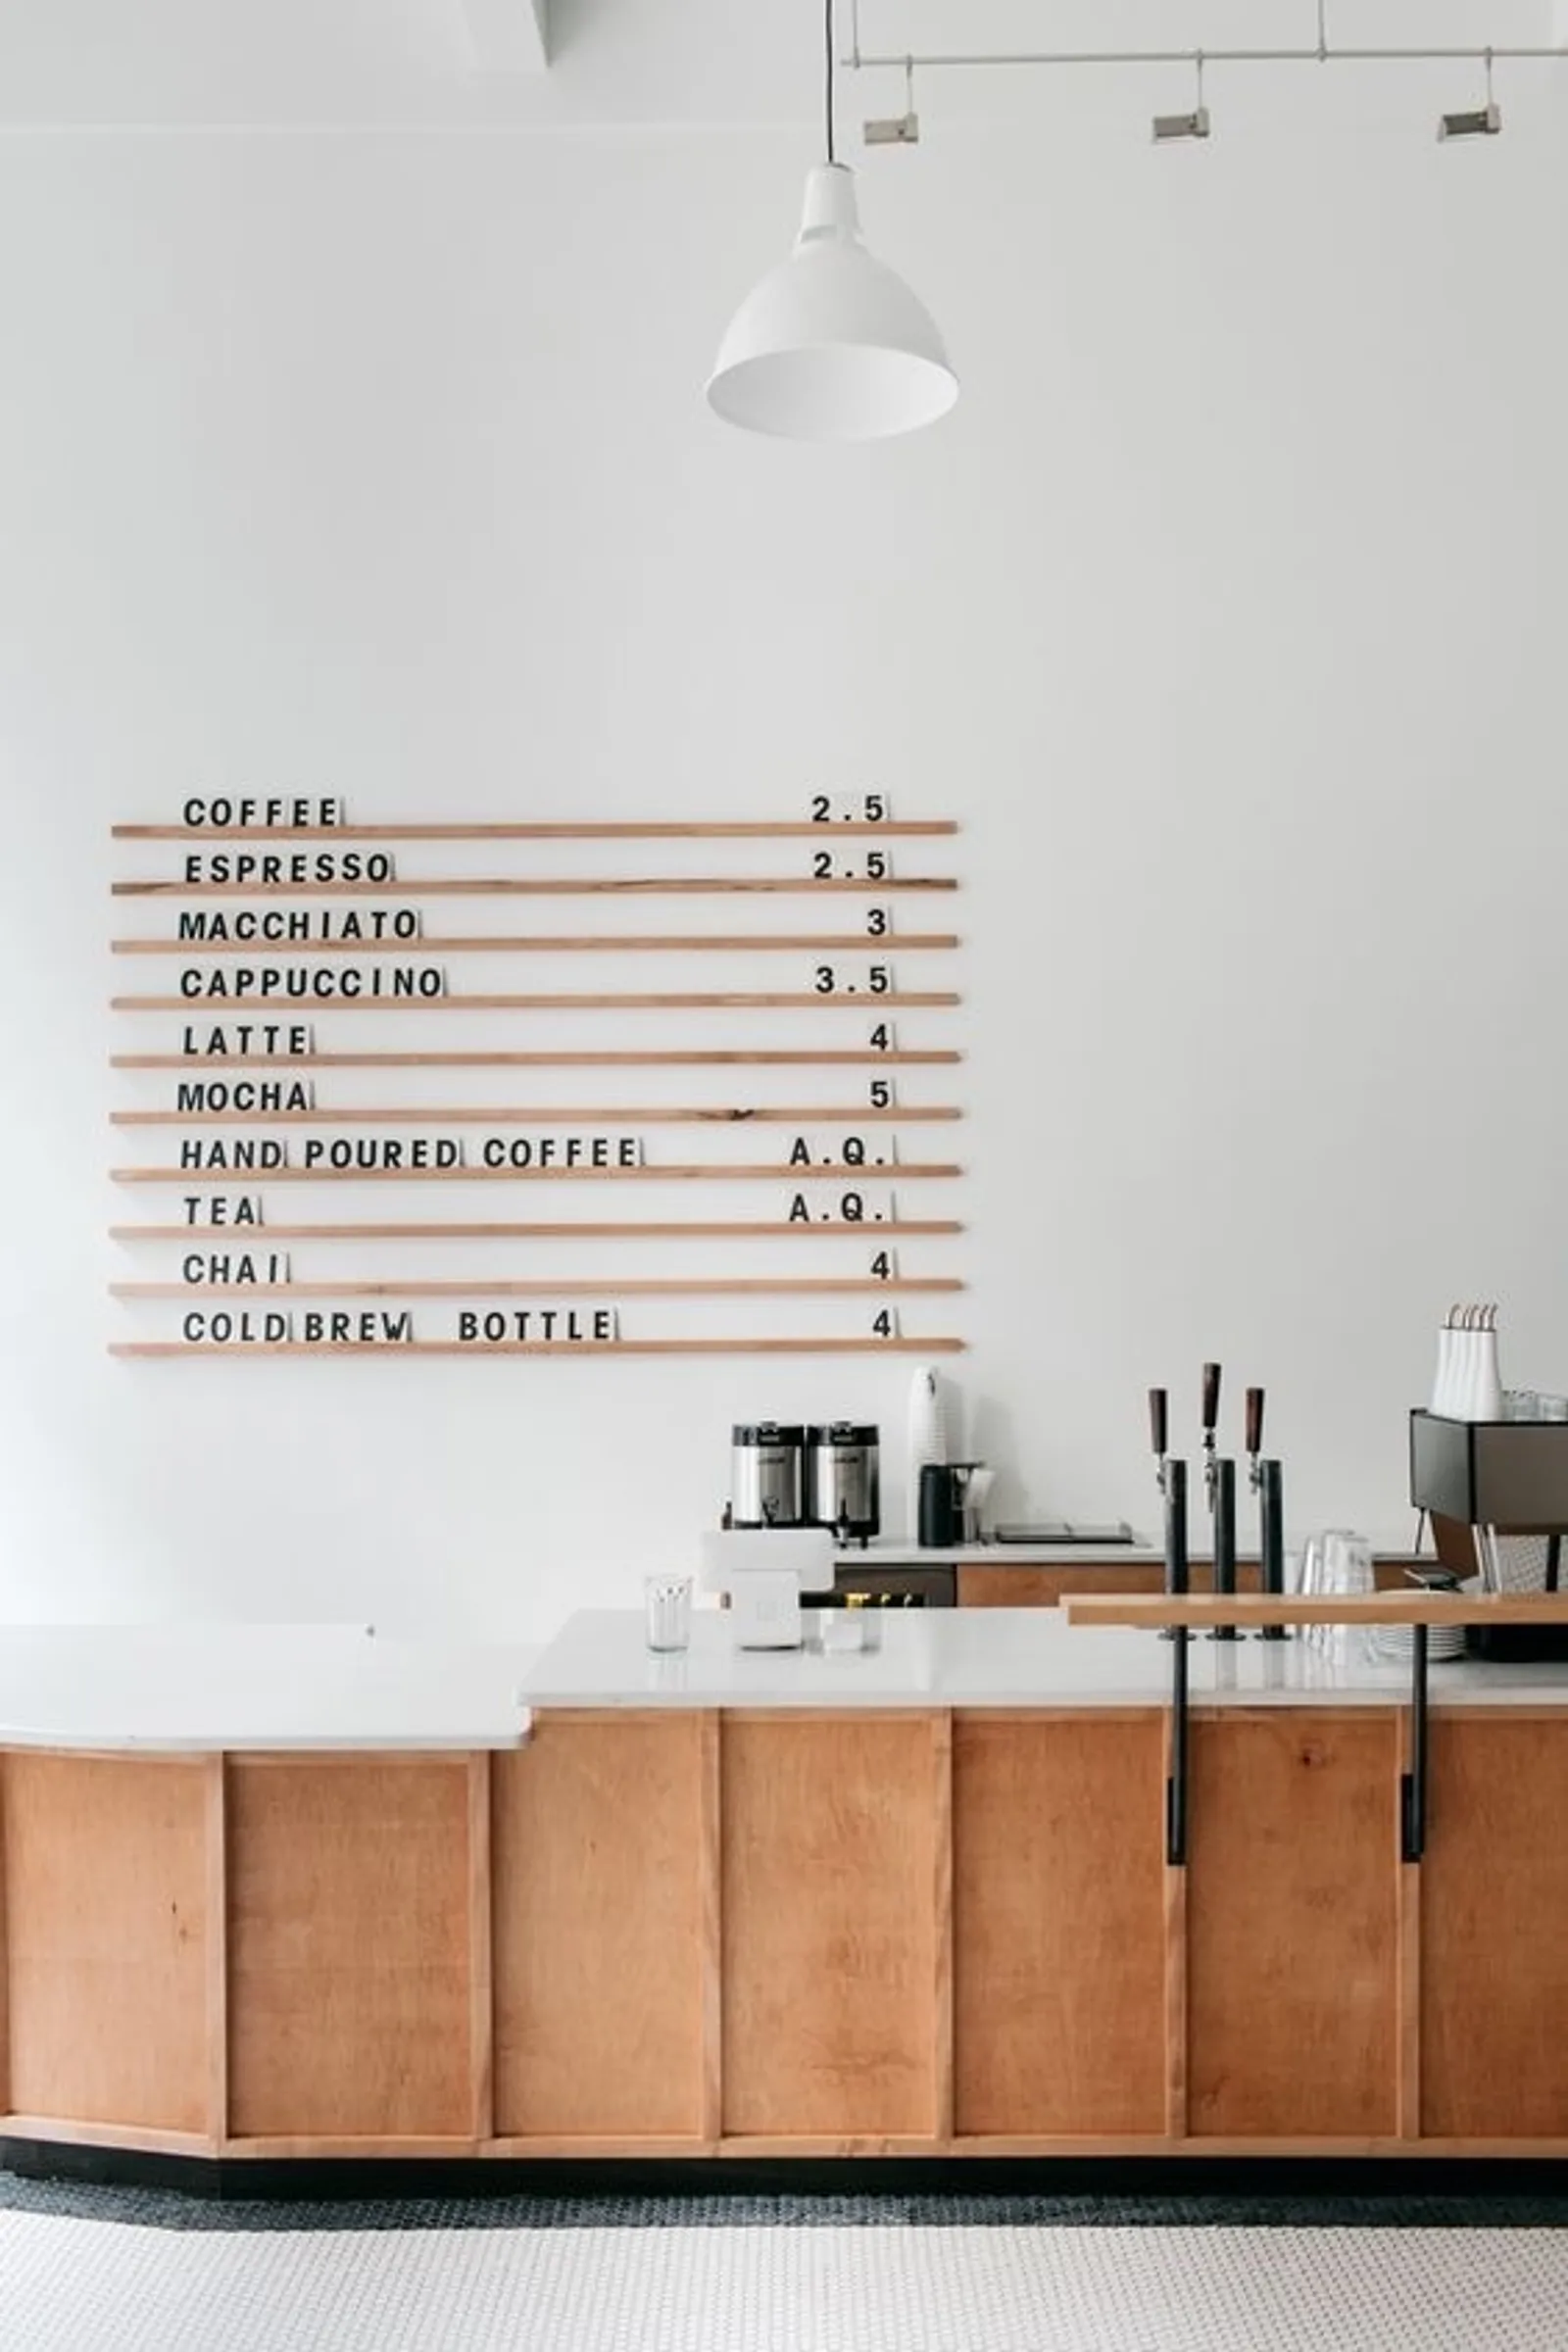 Ingin Punya  Café Minimalis? Ikuti 8 Tips Desain Jaminan Laris Ini